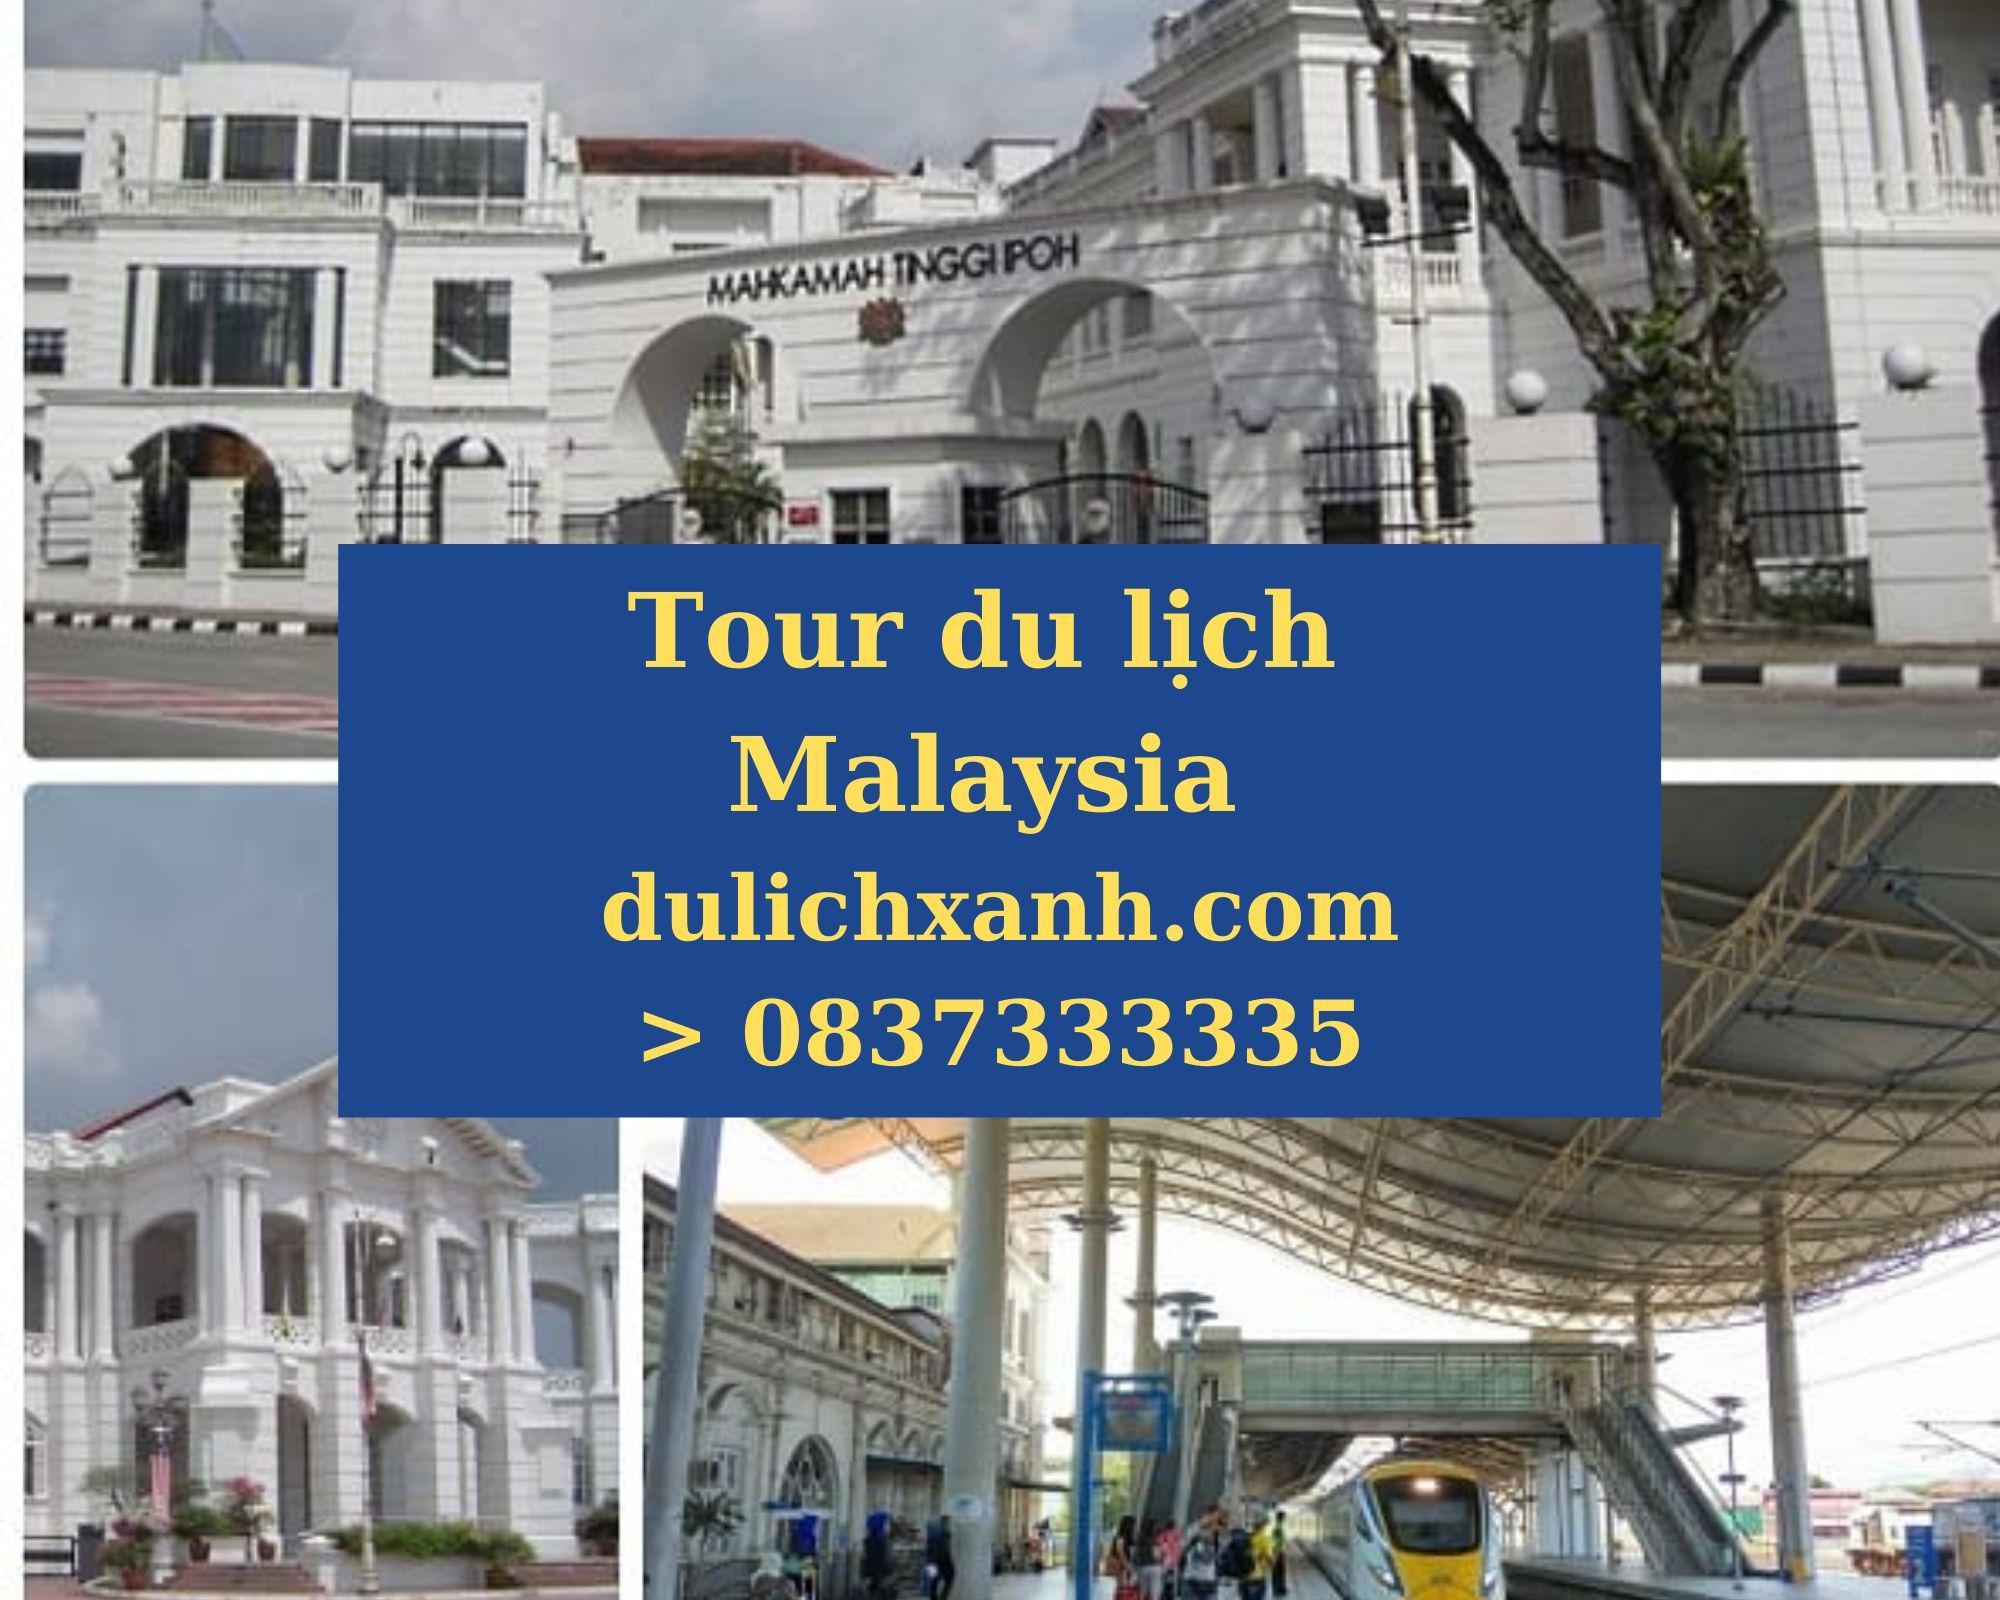 Tour du lịch Malaysia - Kuala Lumpur - Ipoh | Khởi hành từ TP.HCM